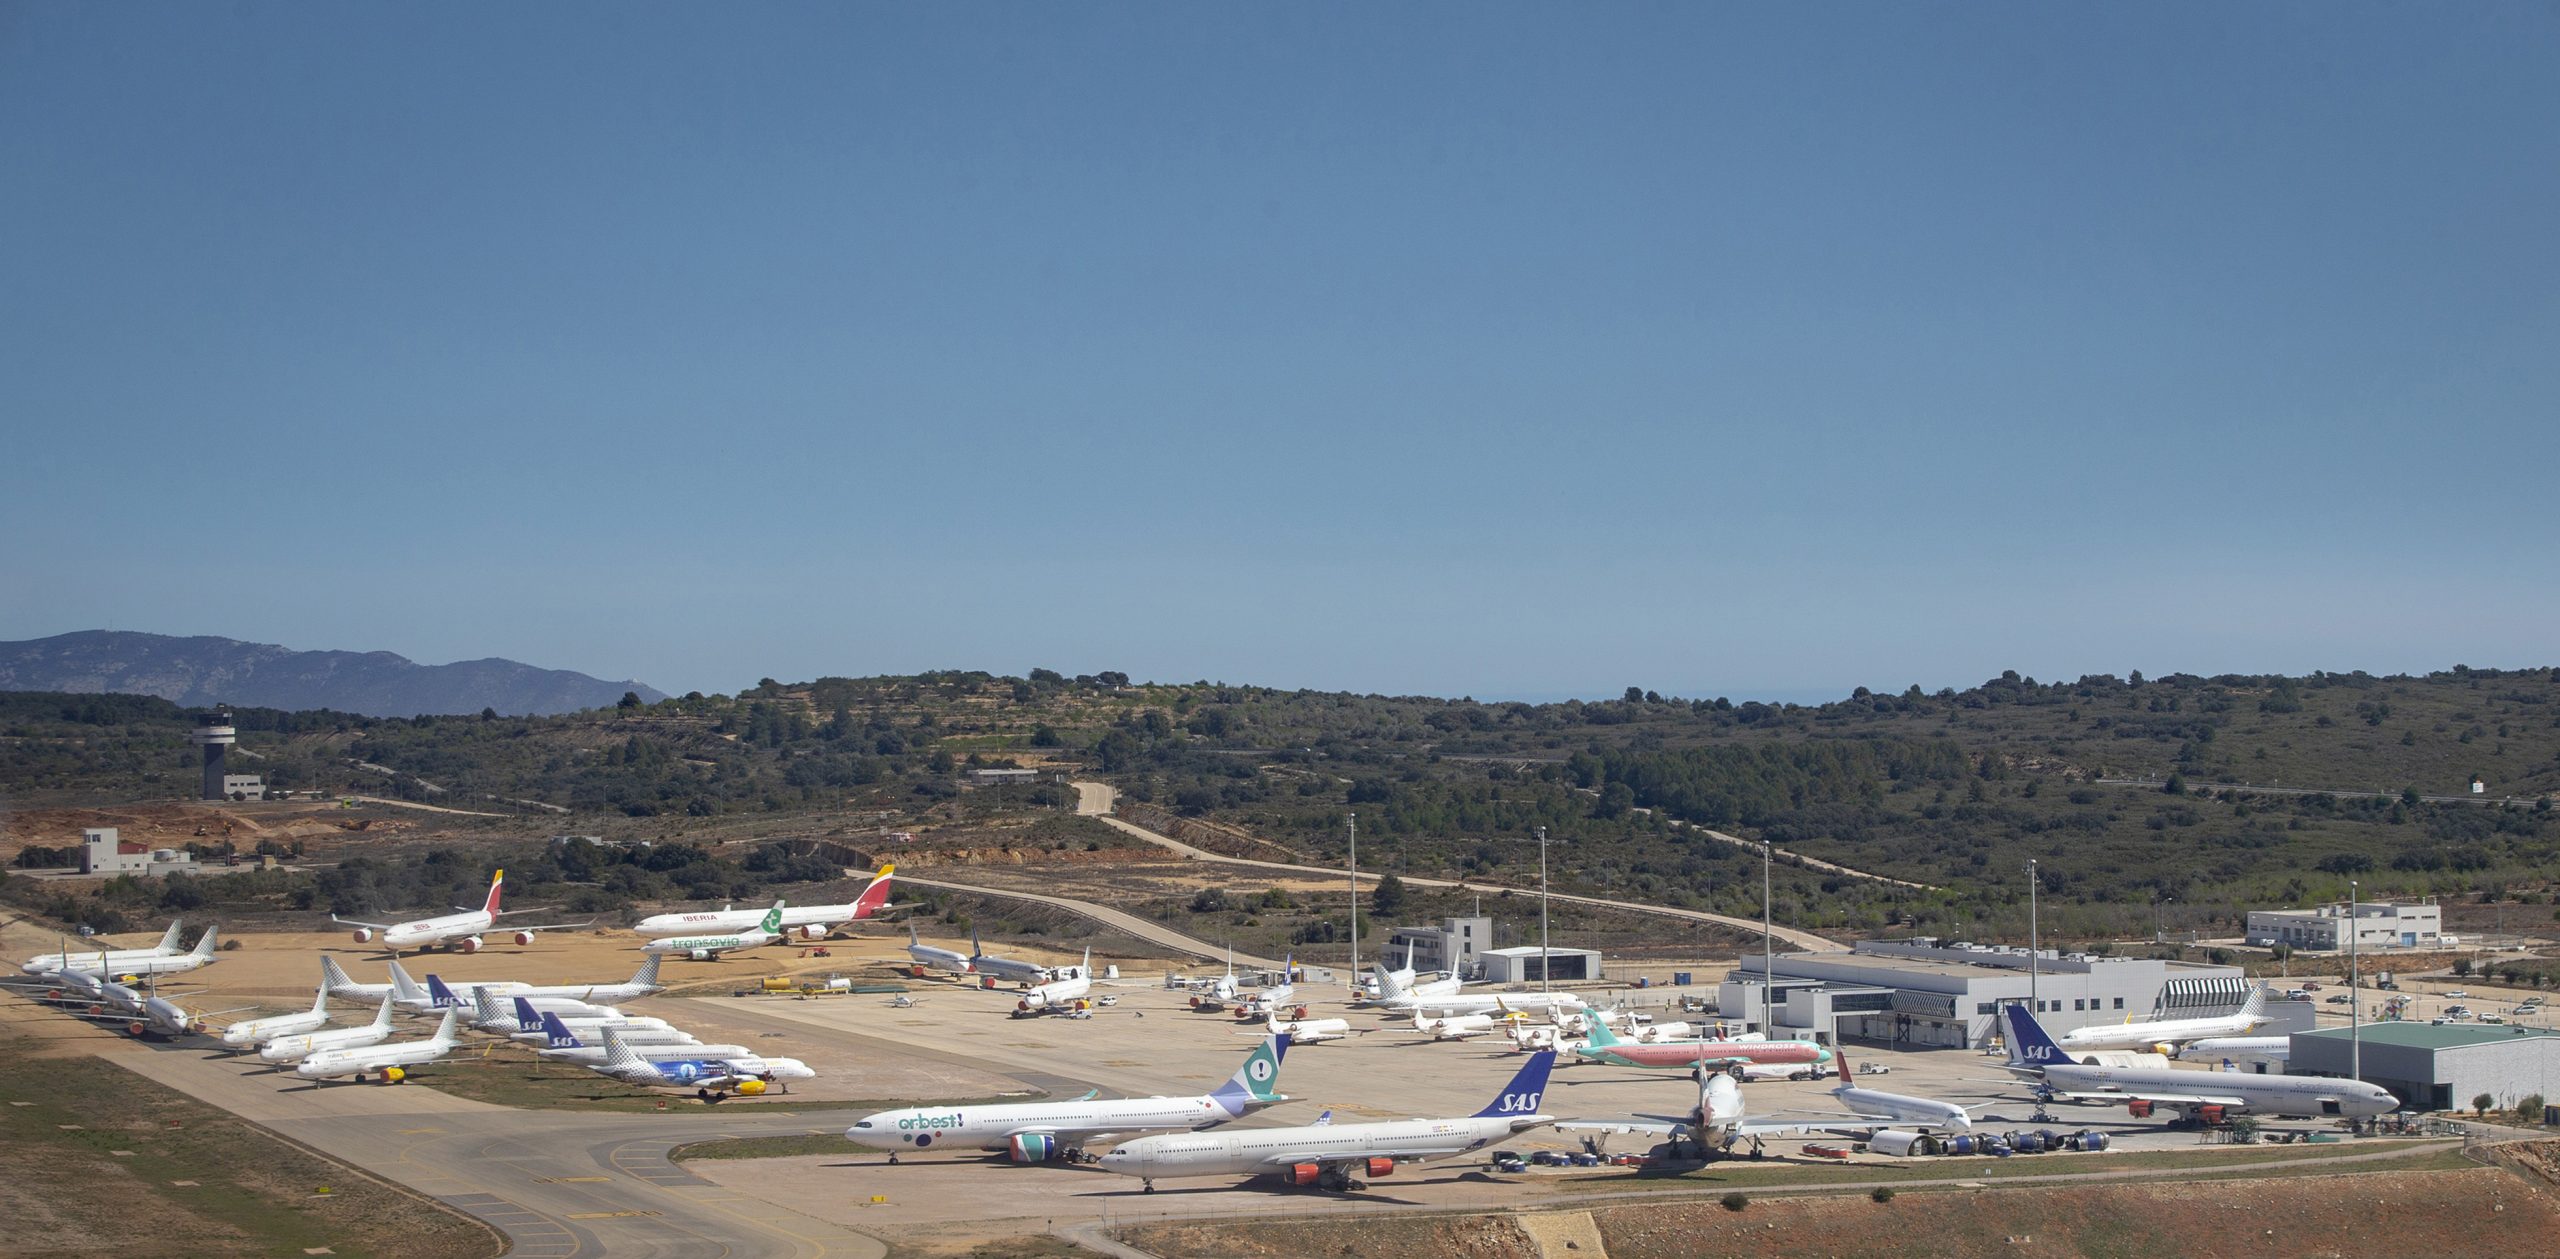 El aeropuerto de Castellón amplía su capacidad de acogida de aviones tras activar nuevas zonas de expansión